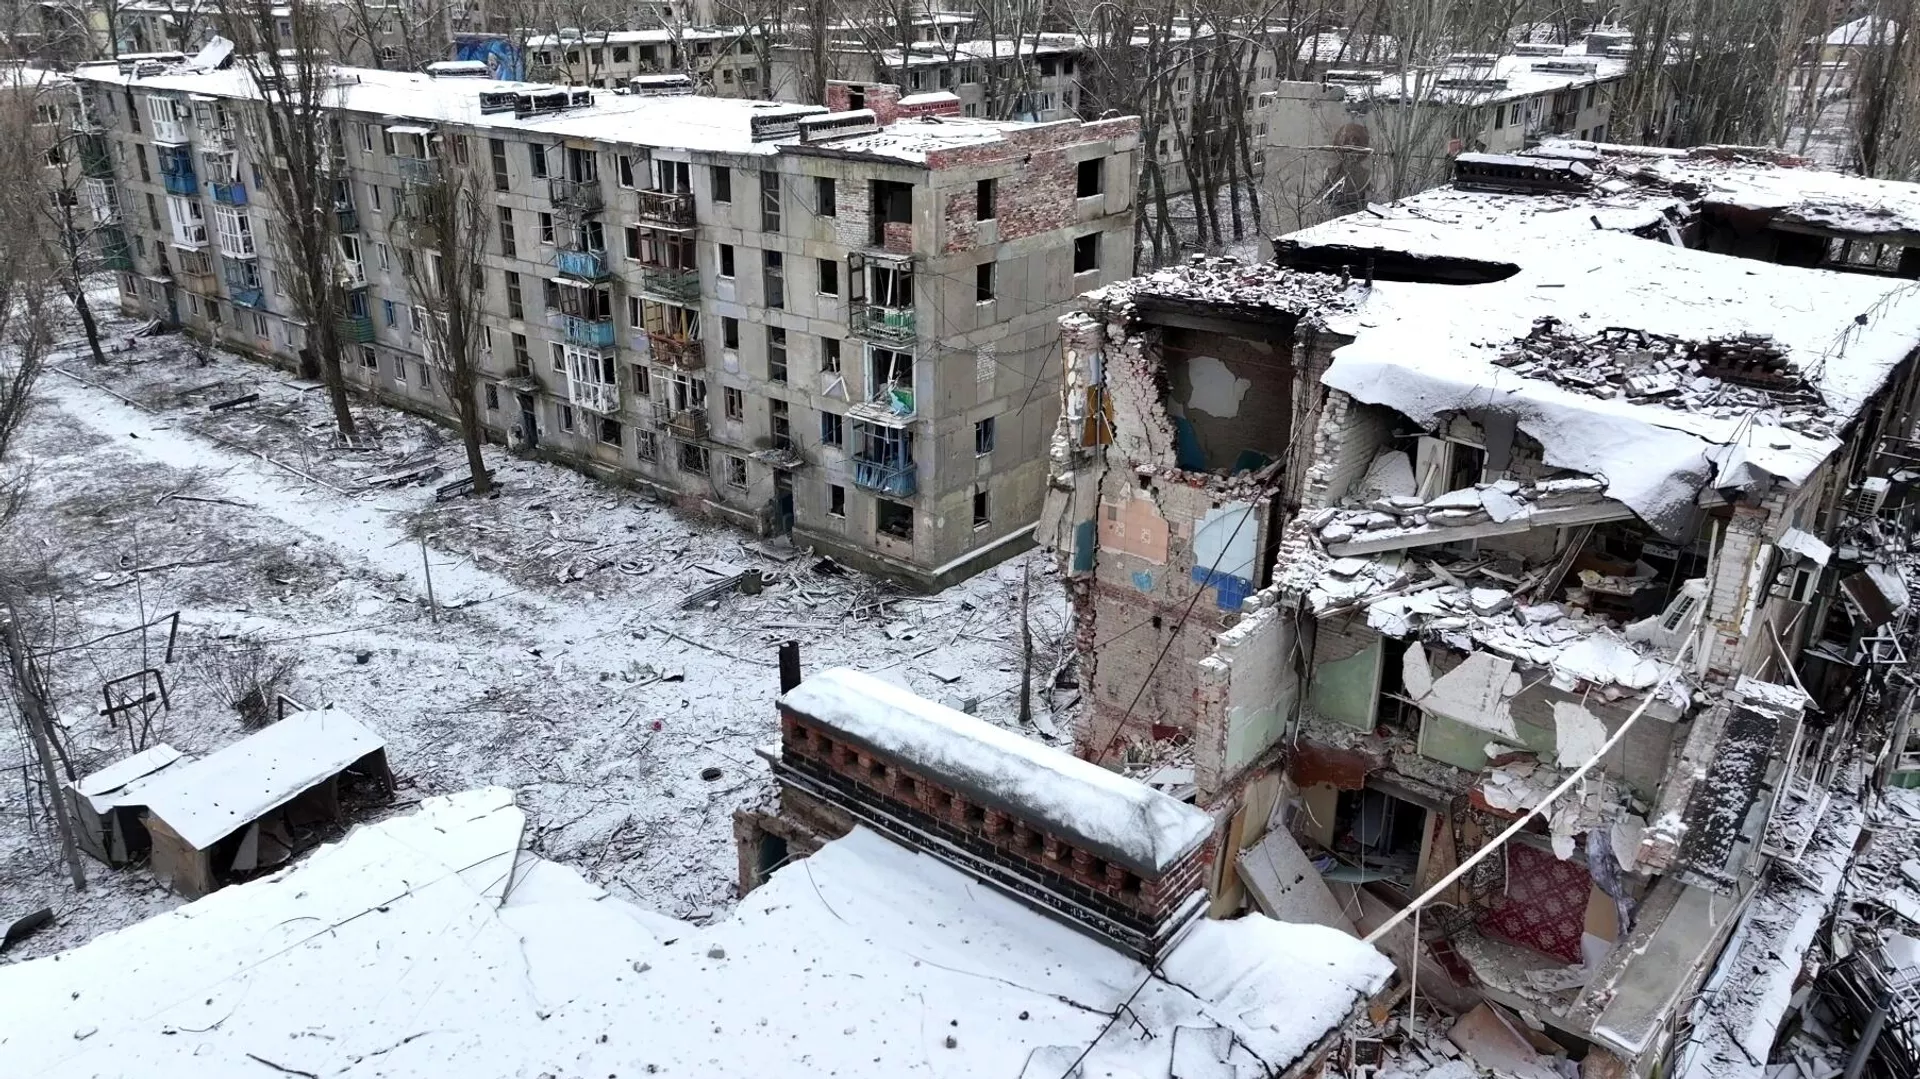 بر اثر سقوط گلوله اوکراینی بر روی خانه ای در کاخوفکا، خرسون، یک غیرنظامی کشته و تعدادی دیگر زخمی شدند